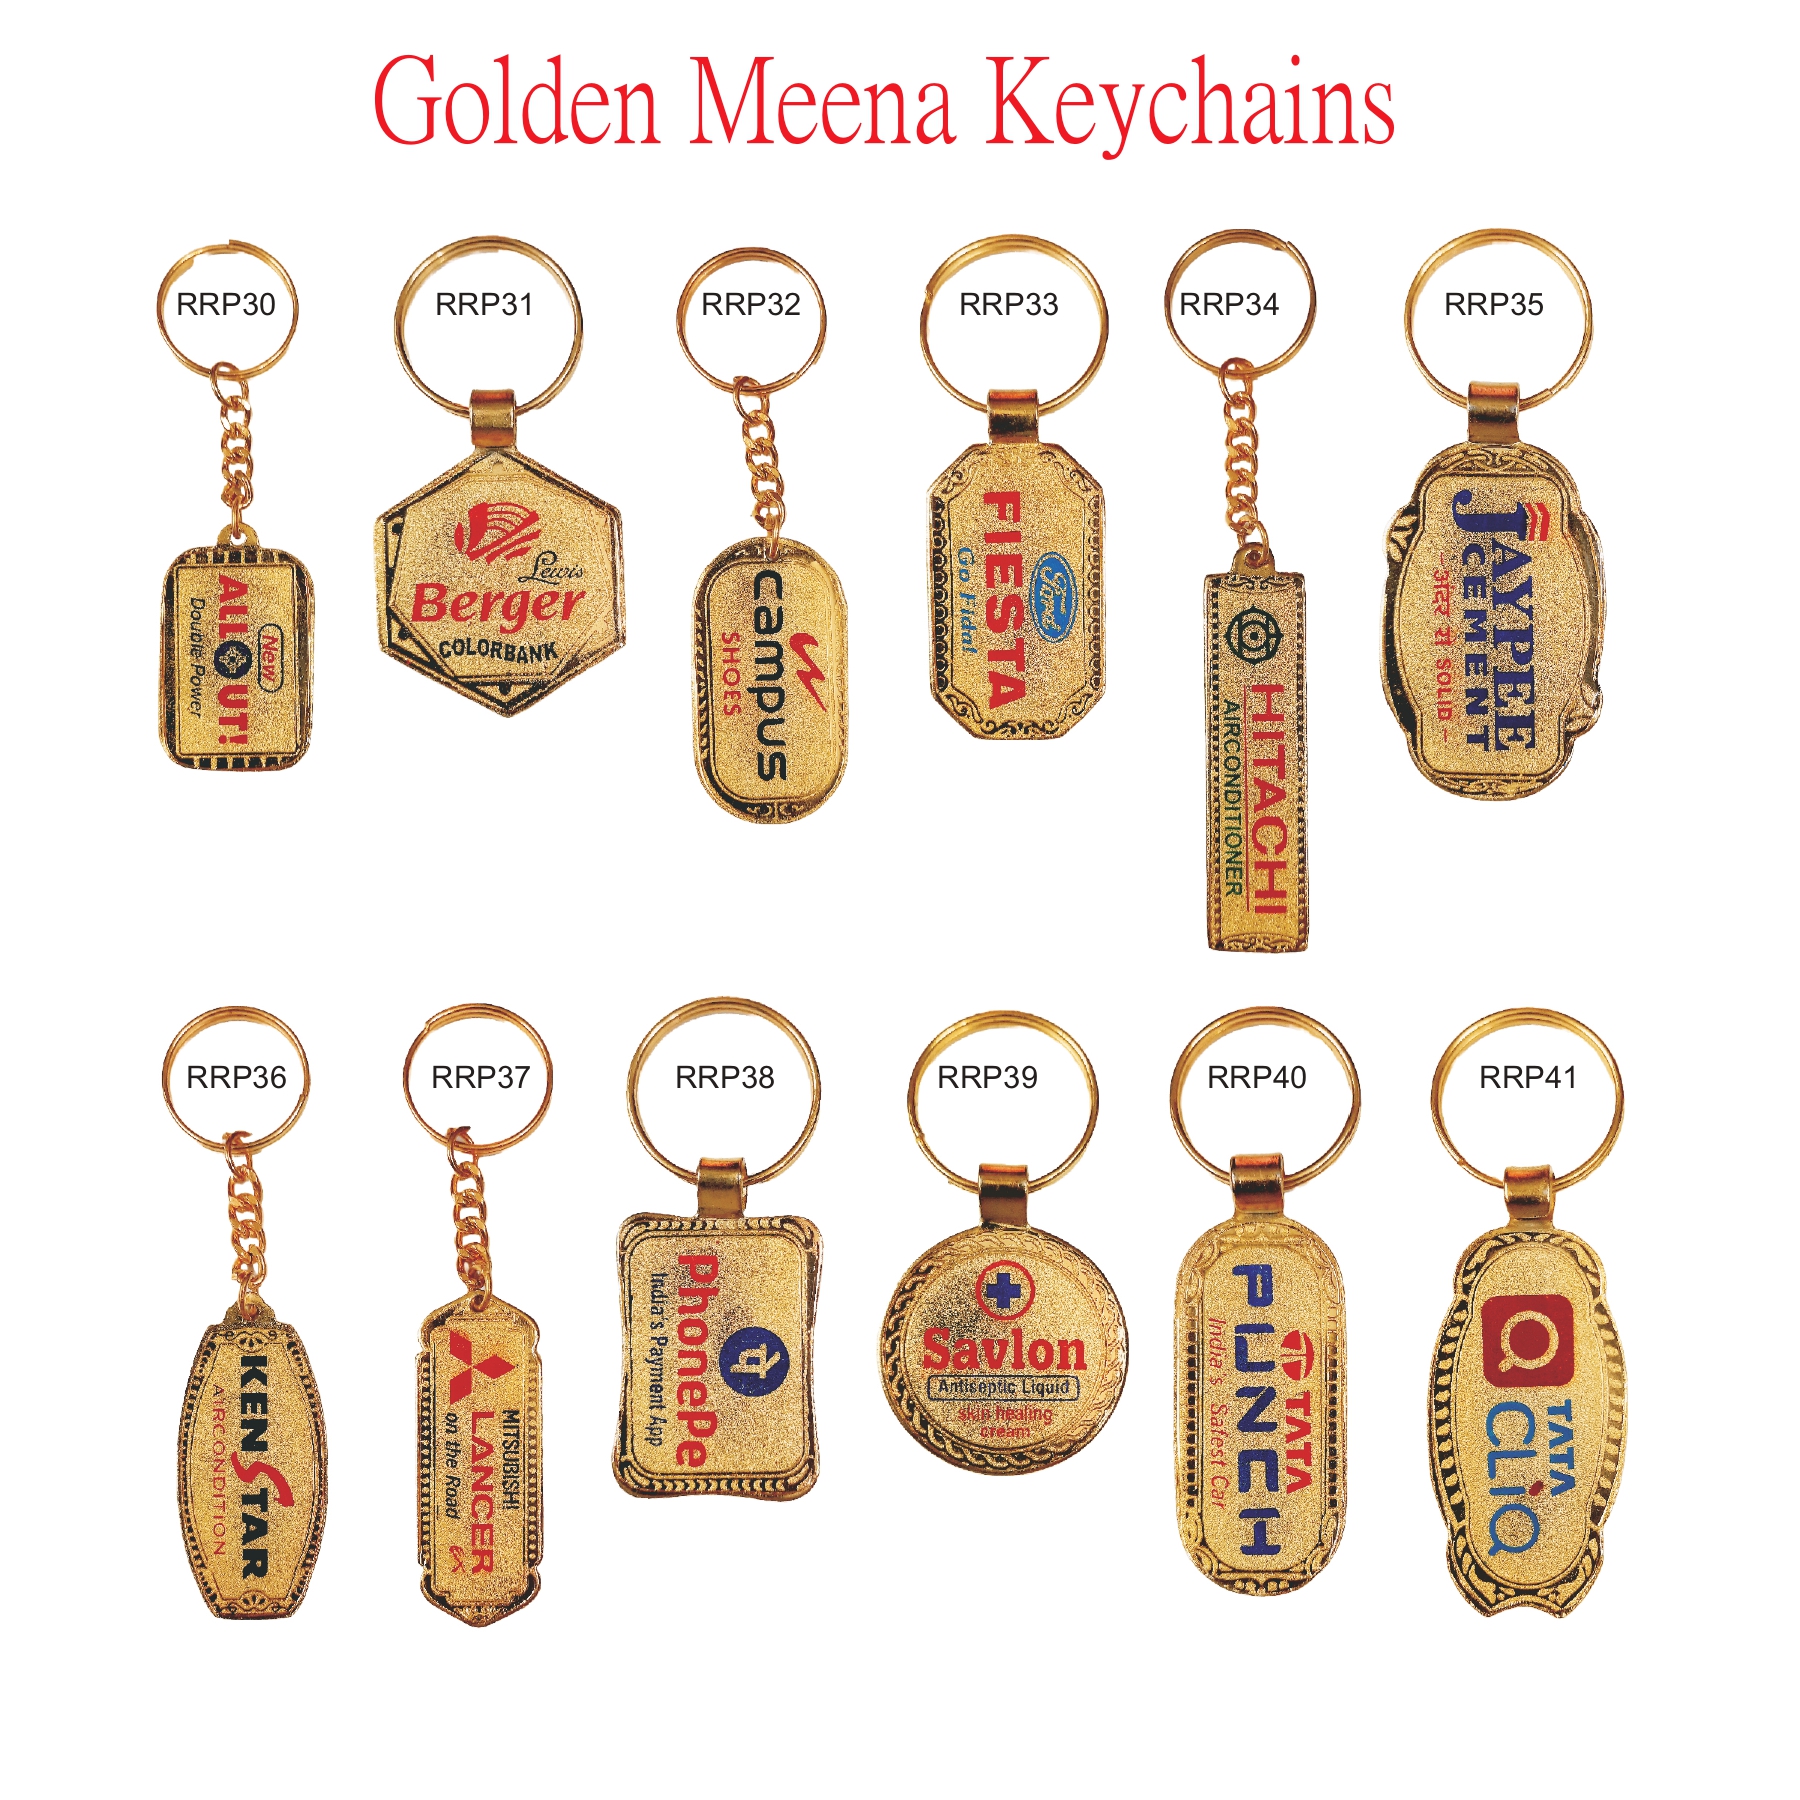 Golden Meena Keychain